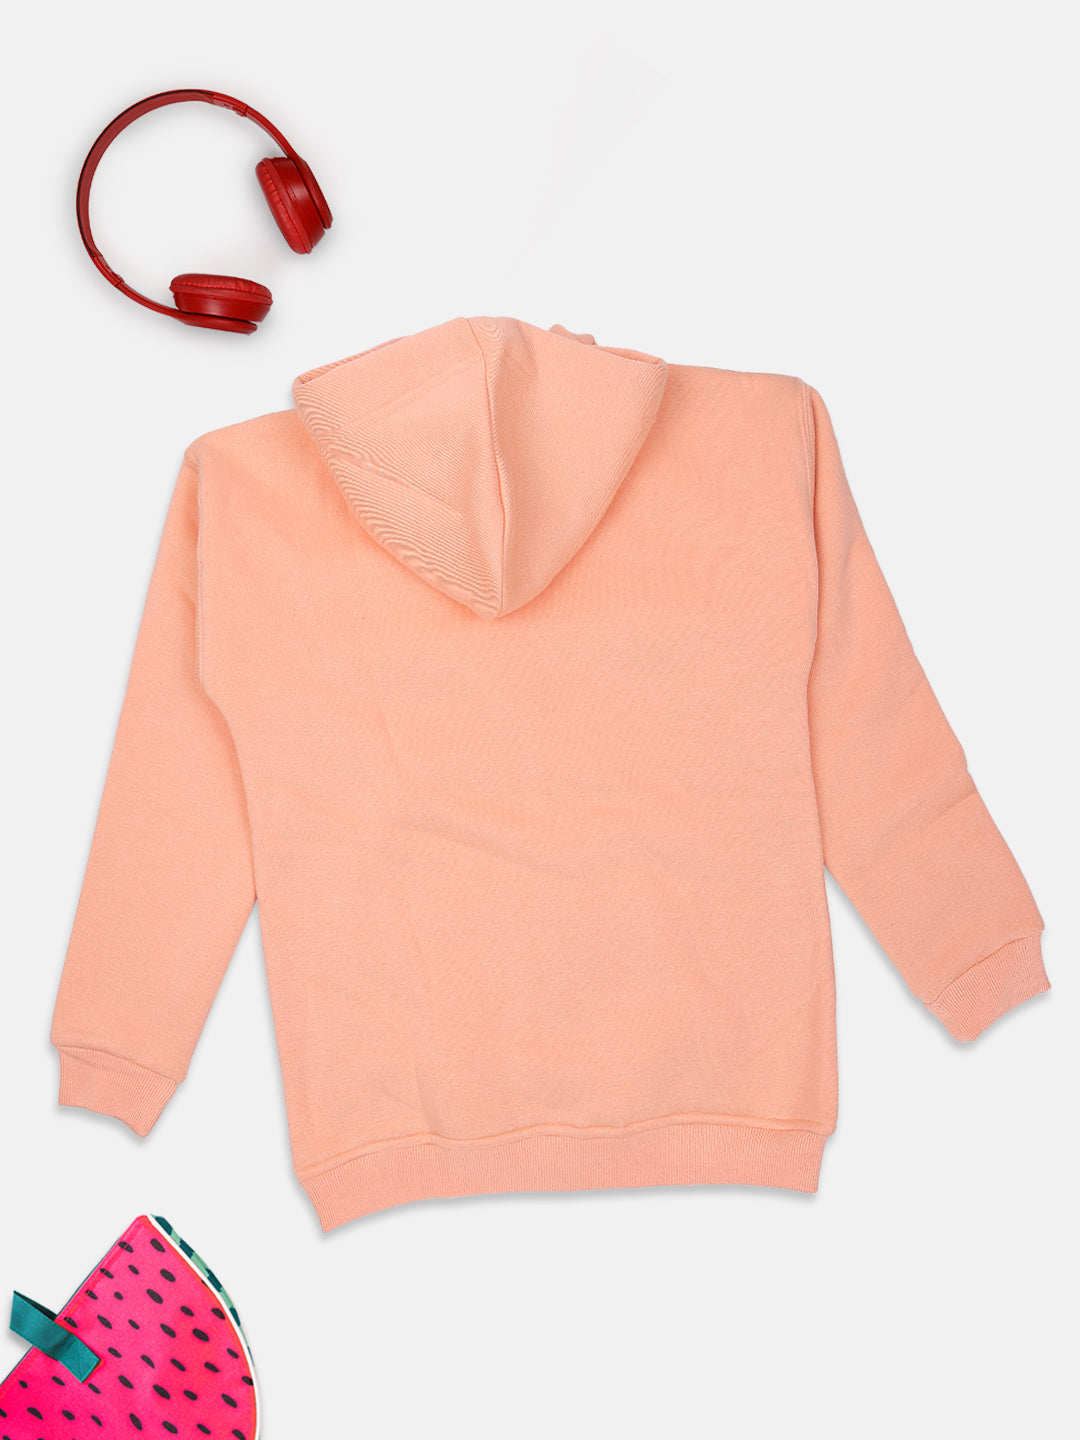 Ziama Girls Solid Sweatshirt Zipper With Hoddie-Peach